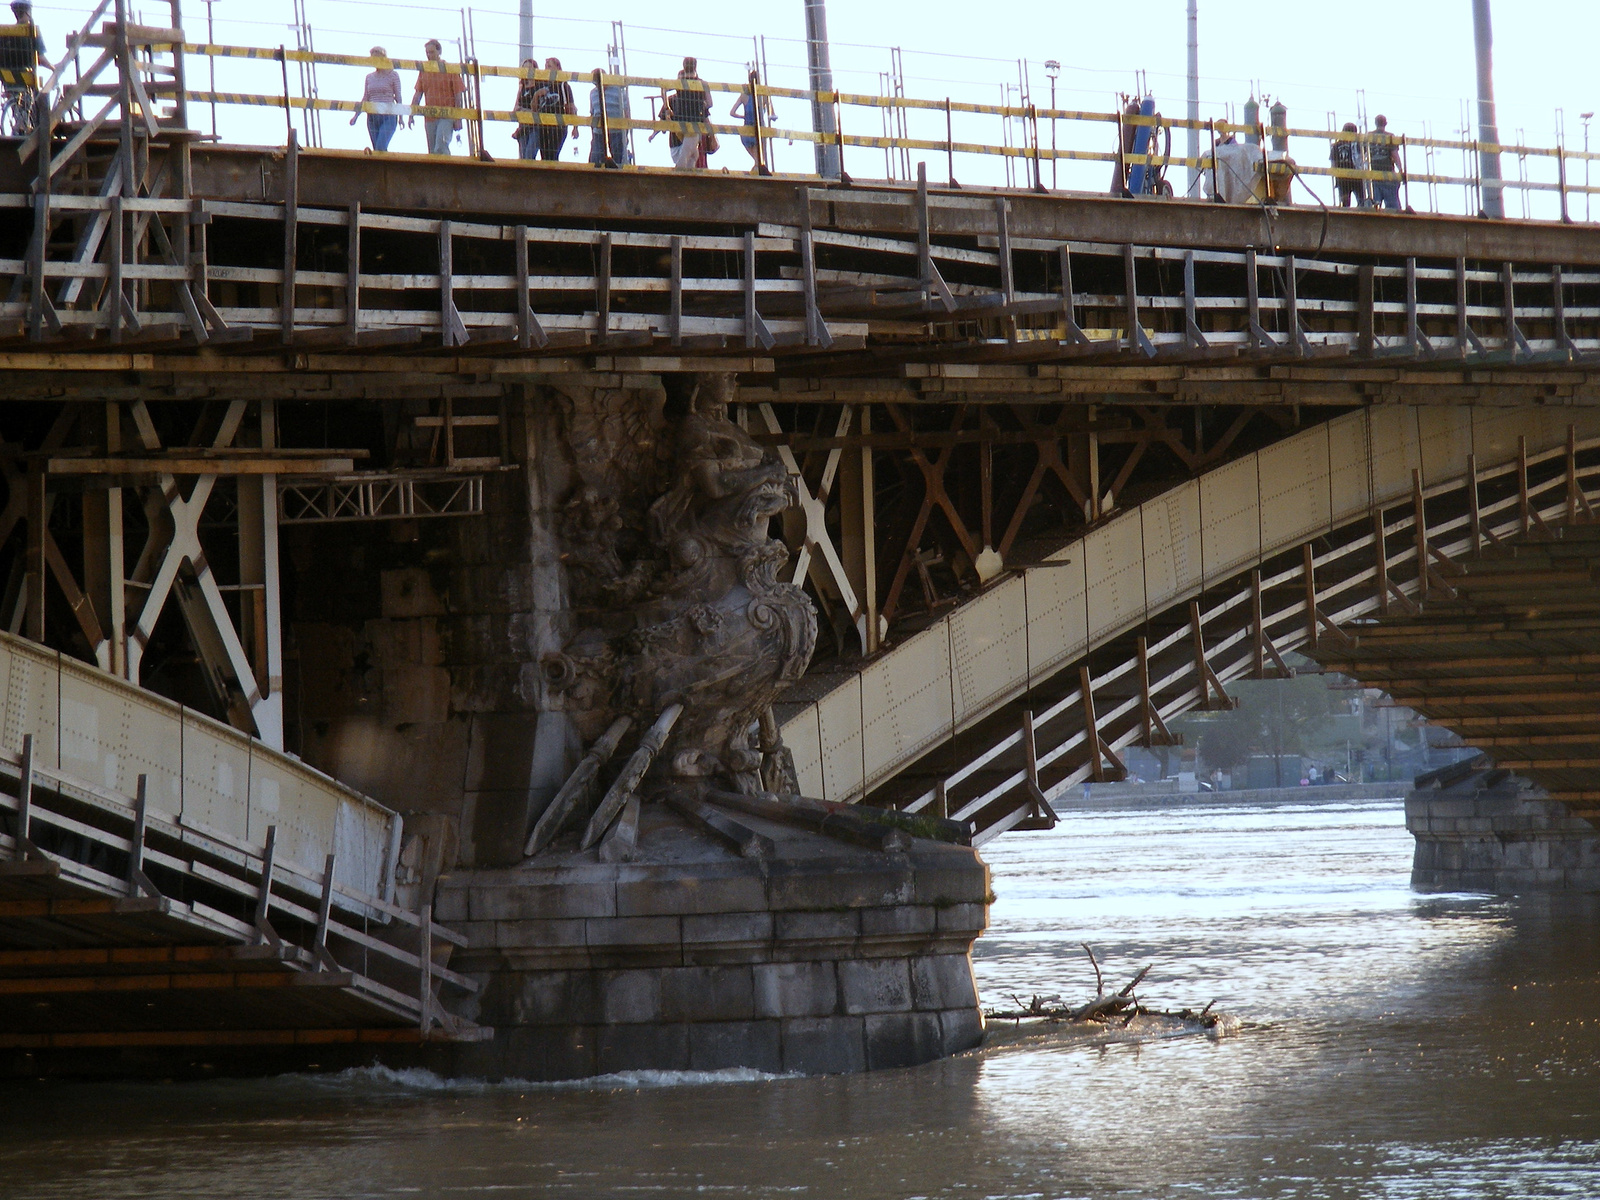 Árvízi híd részlet